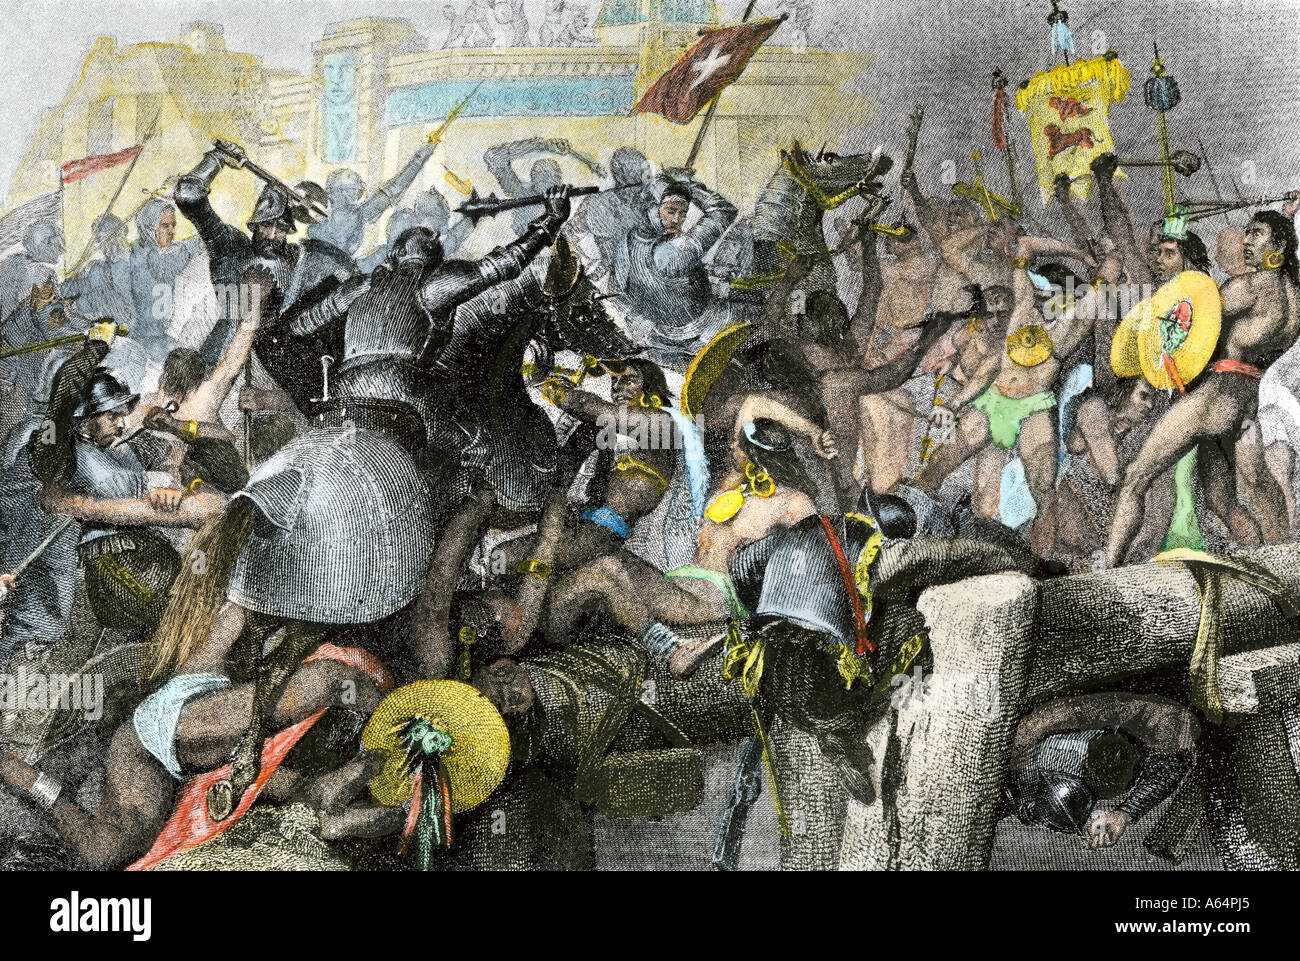 Eroberung der Aztekenhauptstadt Tenochtitlan von der spanischen Armee von Hernando Cortes 1500. Handcolorierte halftone einer Abbildung Stockfoto